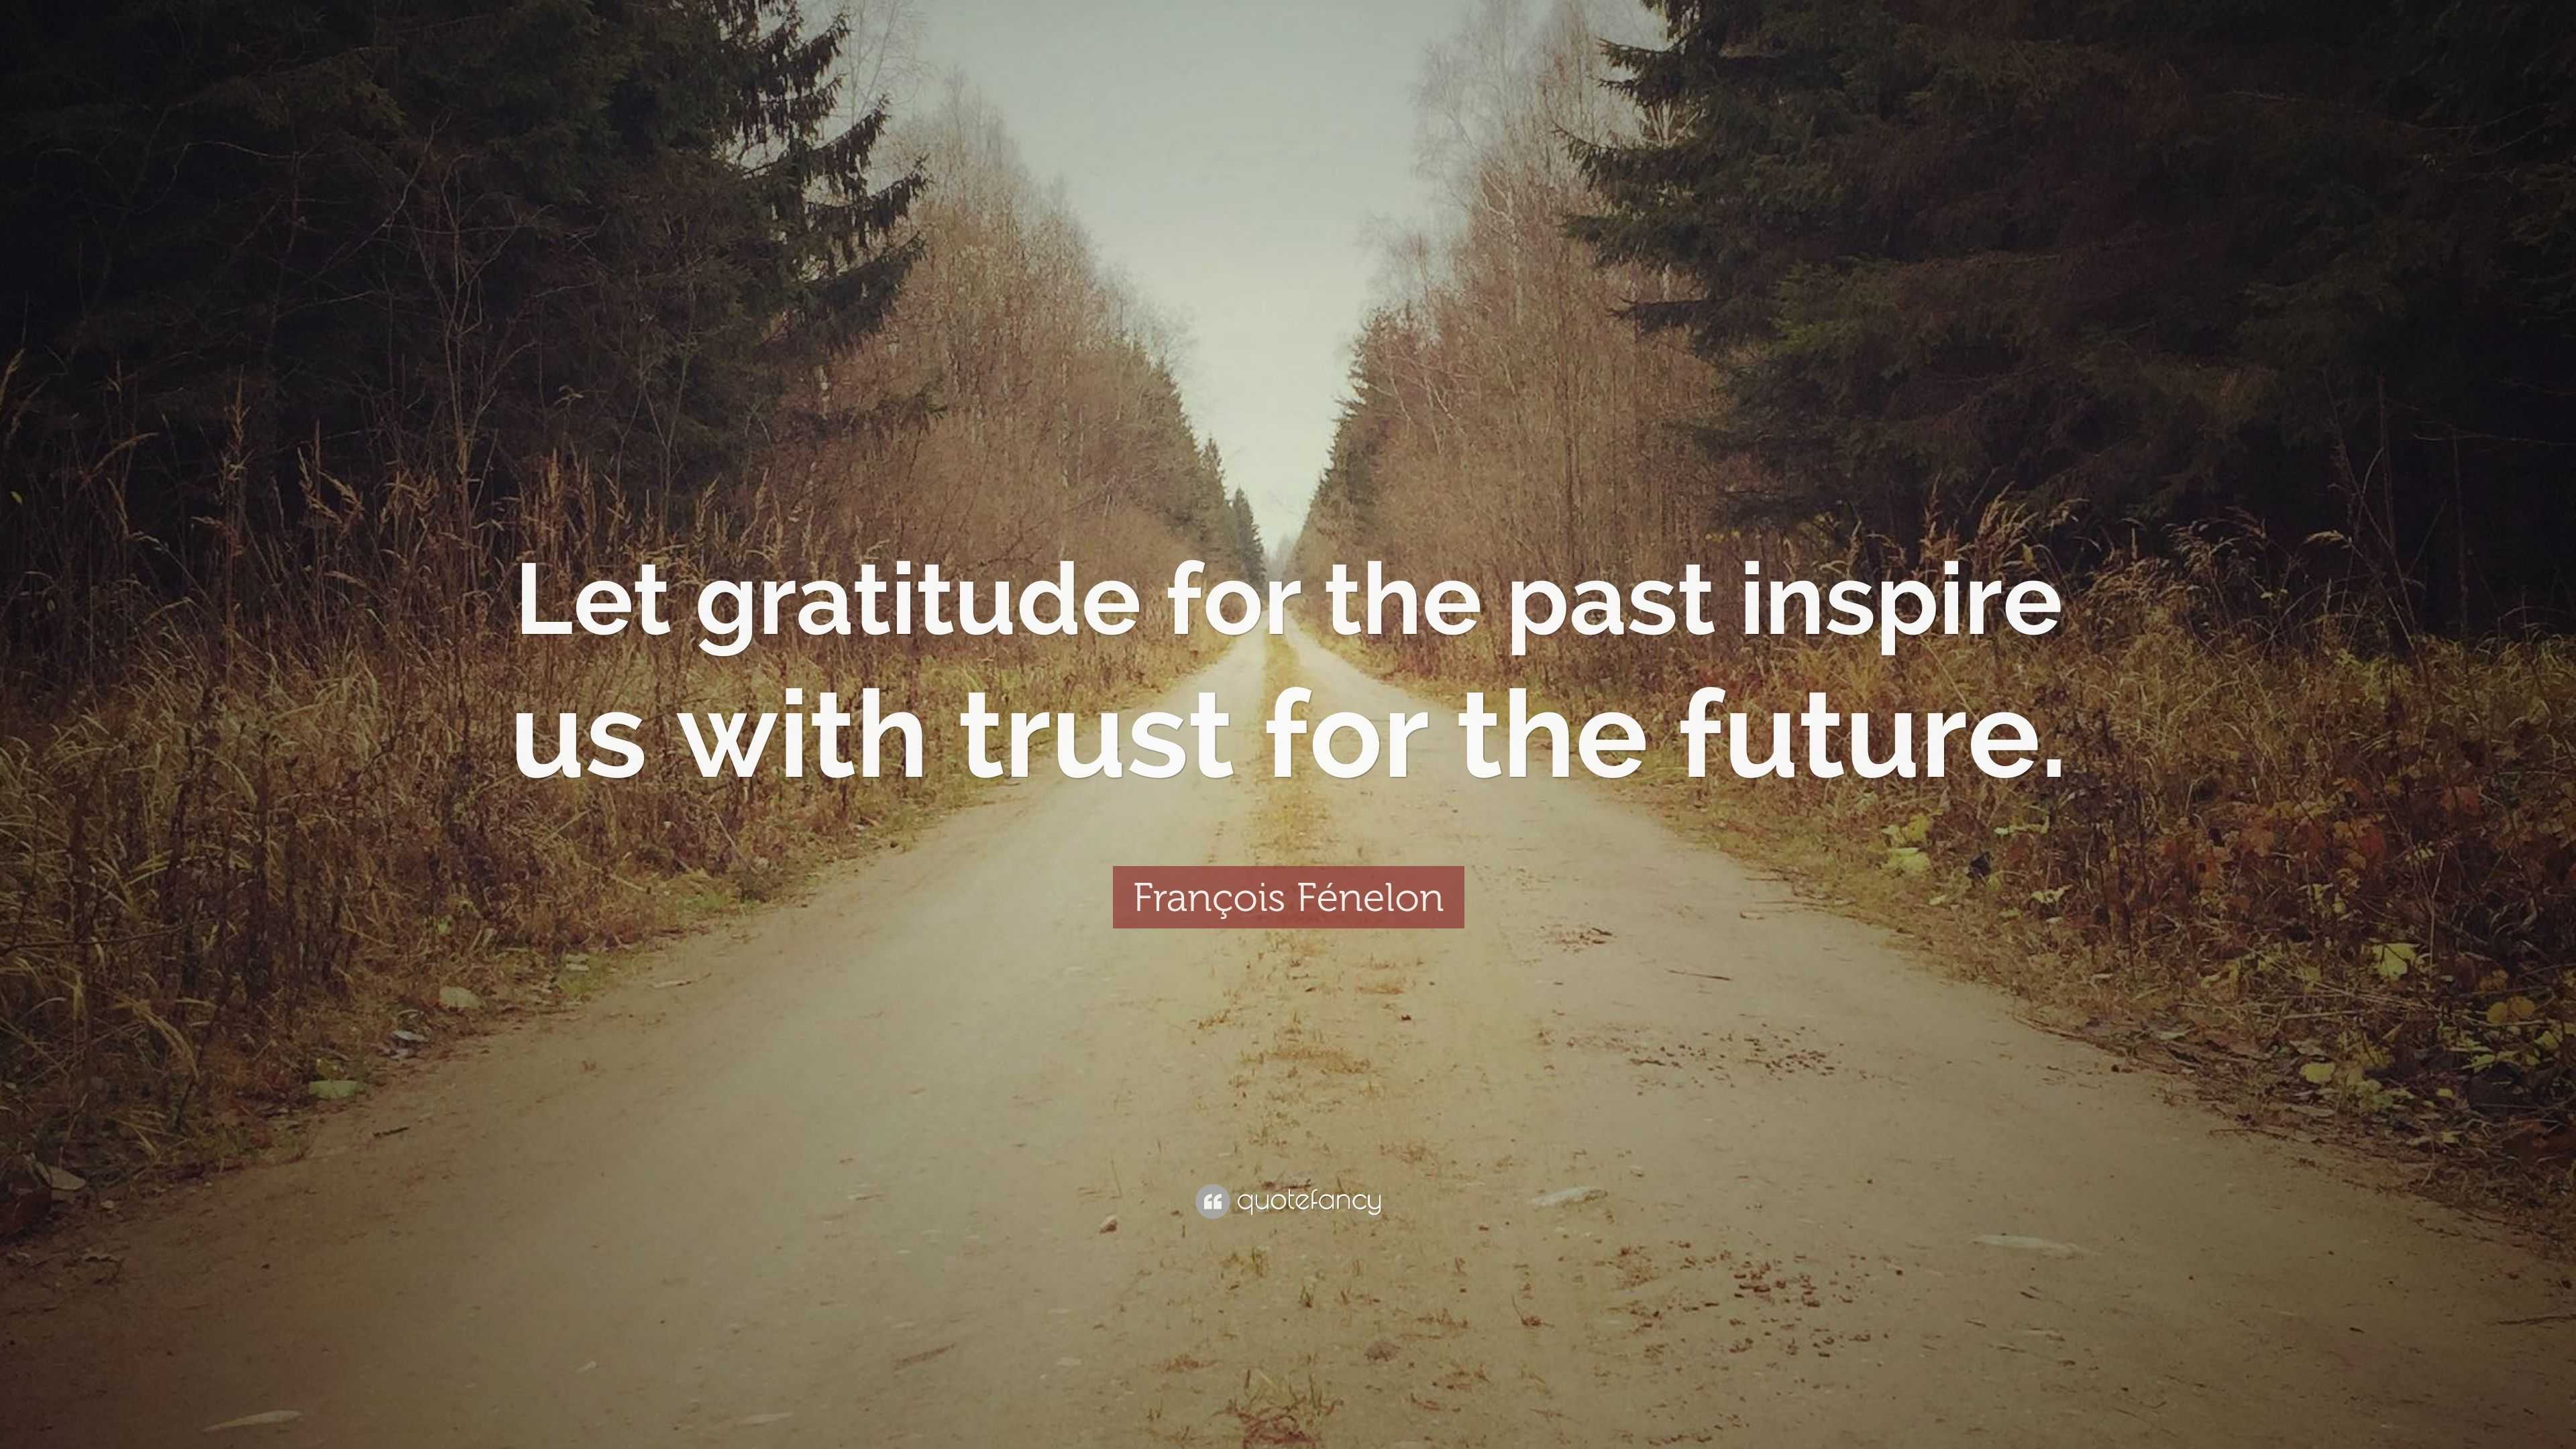 François Fénelon Quote: “Let gratitude for the past inspire us with